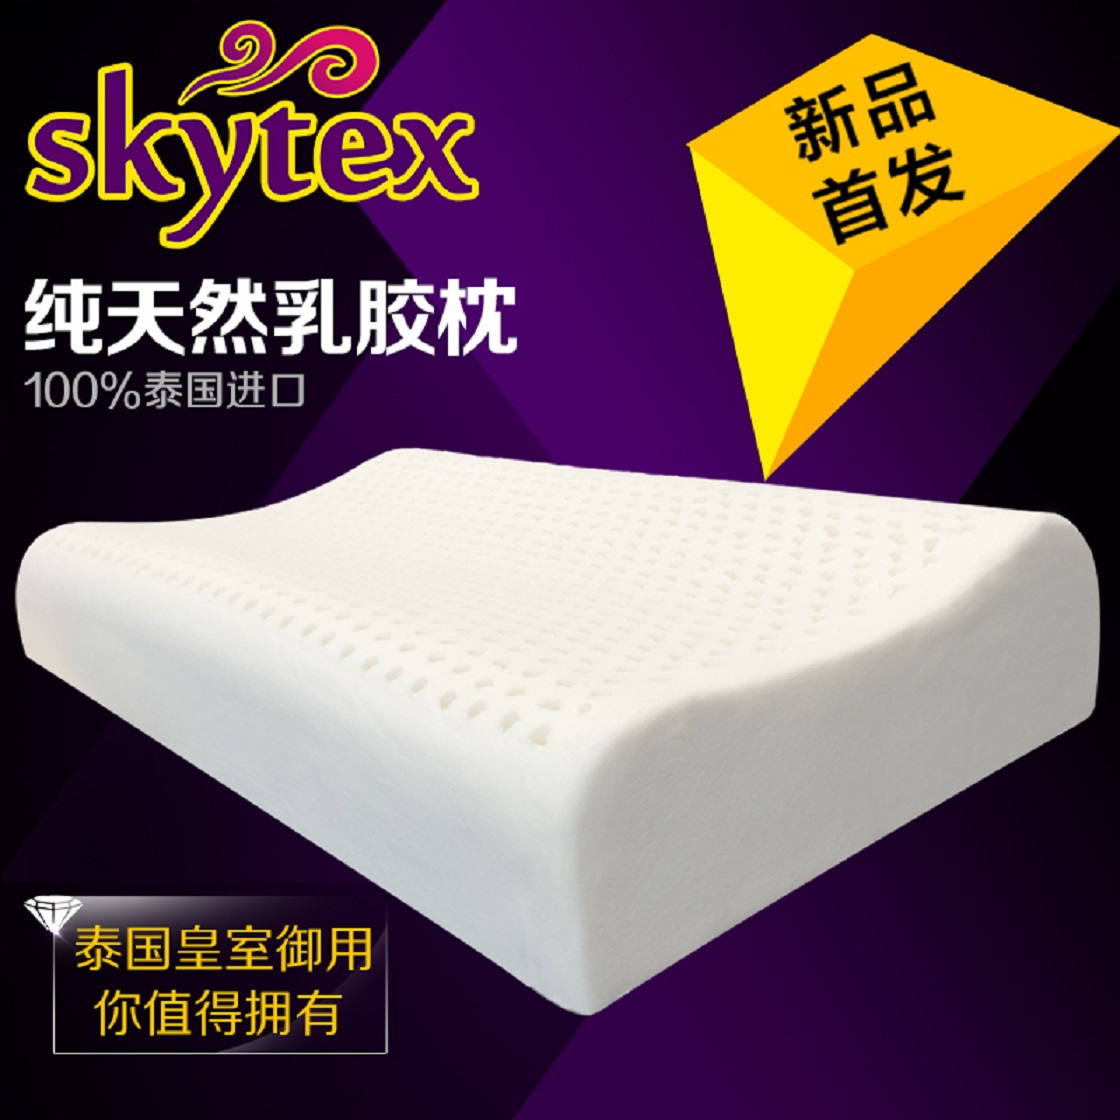 泰国Skytex乳胶枕保健枕颈椎枕健康枕 纯天然乳胶枕芯护颈枕包邮